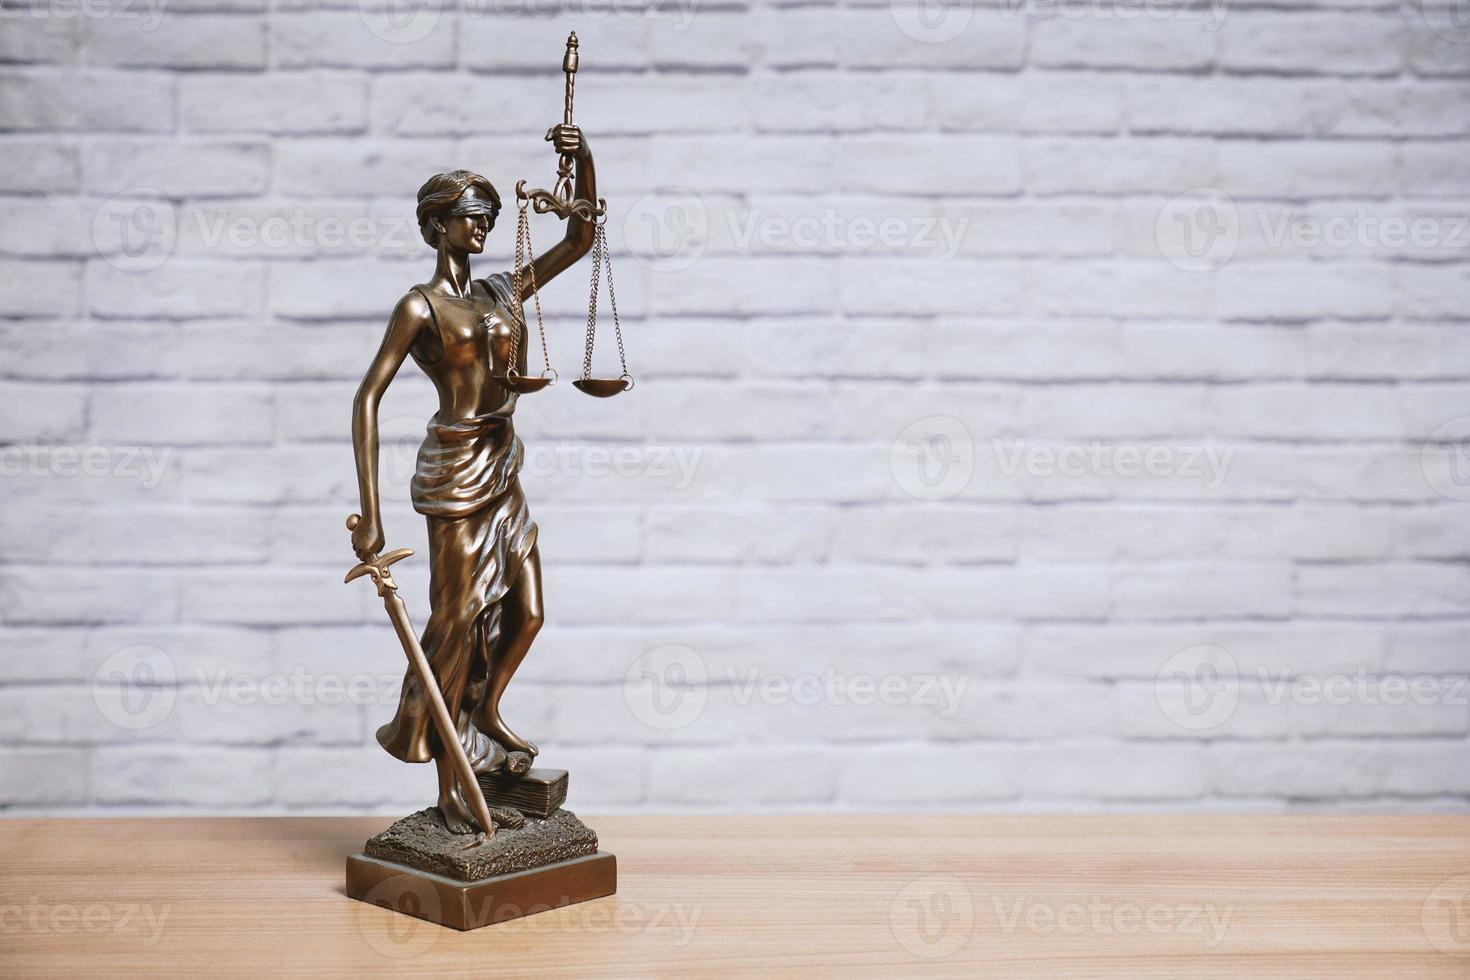 Vrouwe Justitia of Justitia het standbeeld van de godin van Justitie op het bureau - juridische wet wetgeving concept foto